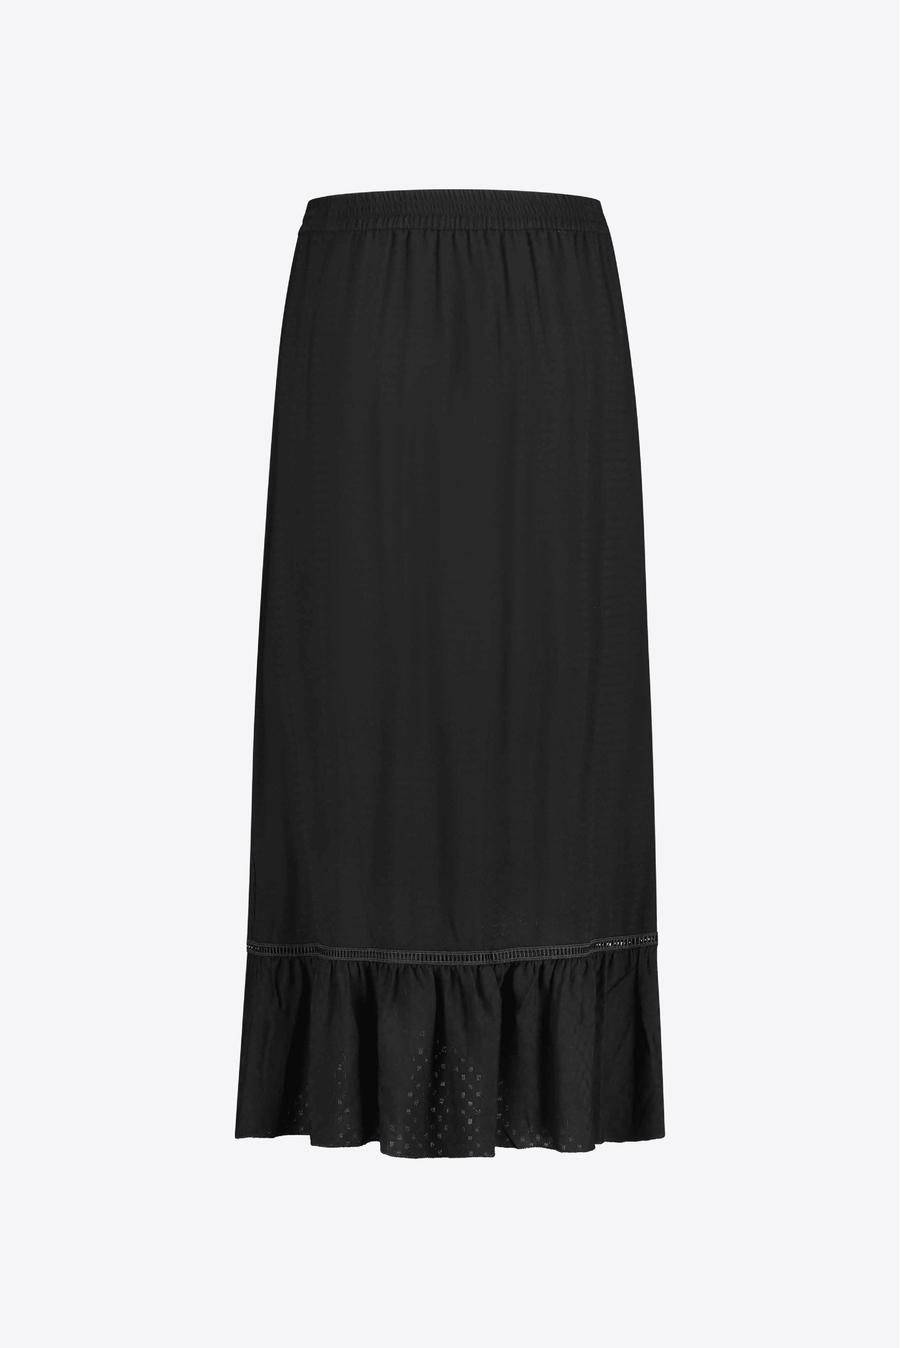 Milla Amsterdam Rosanne Skirt Black